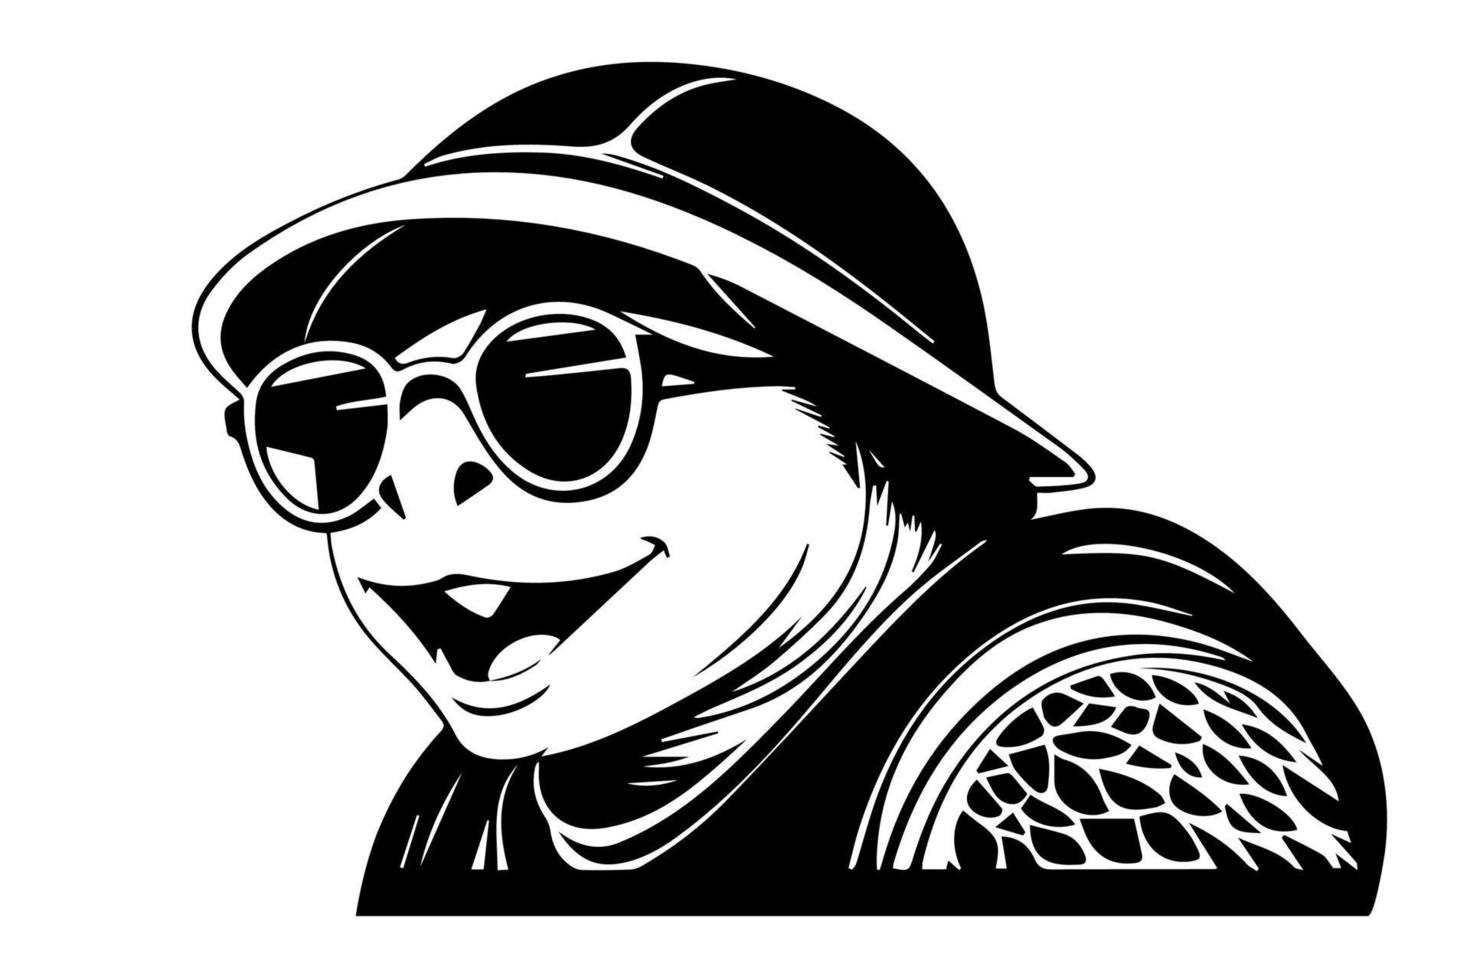 Tortuga en un sombrero y Gafas de sol. vector ilustración. negro y blanco.